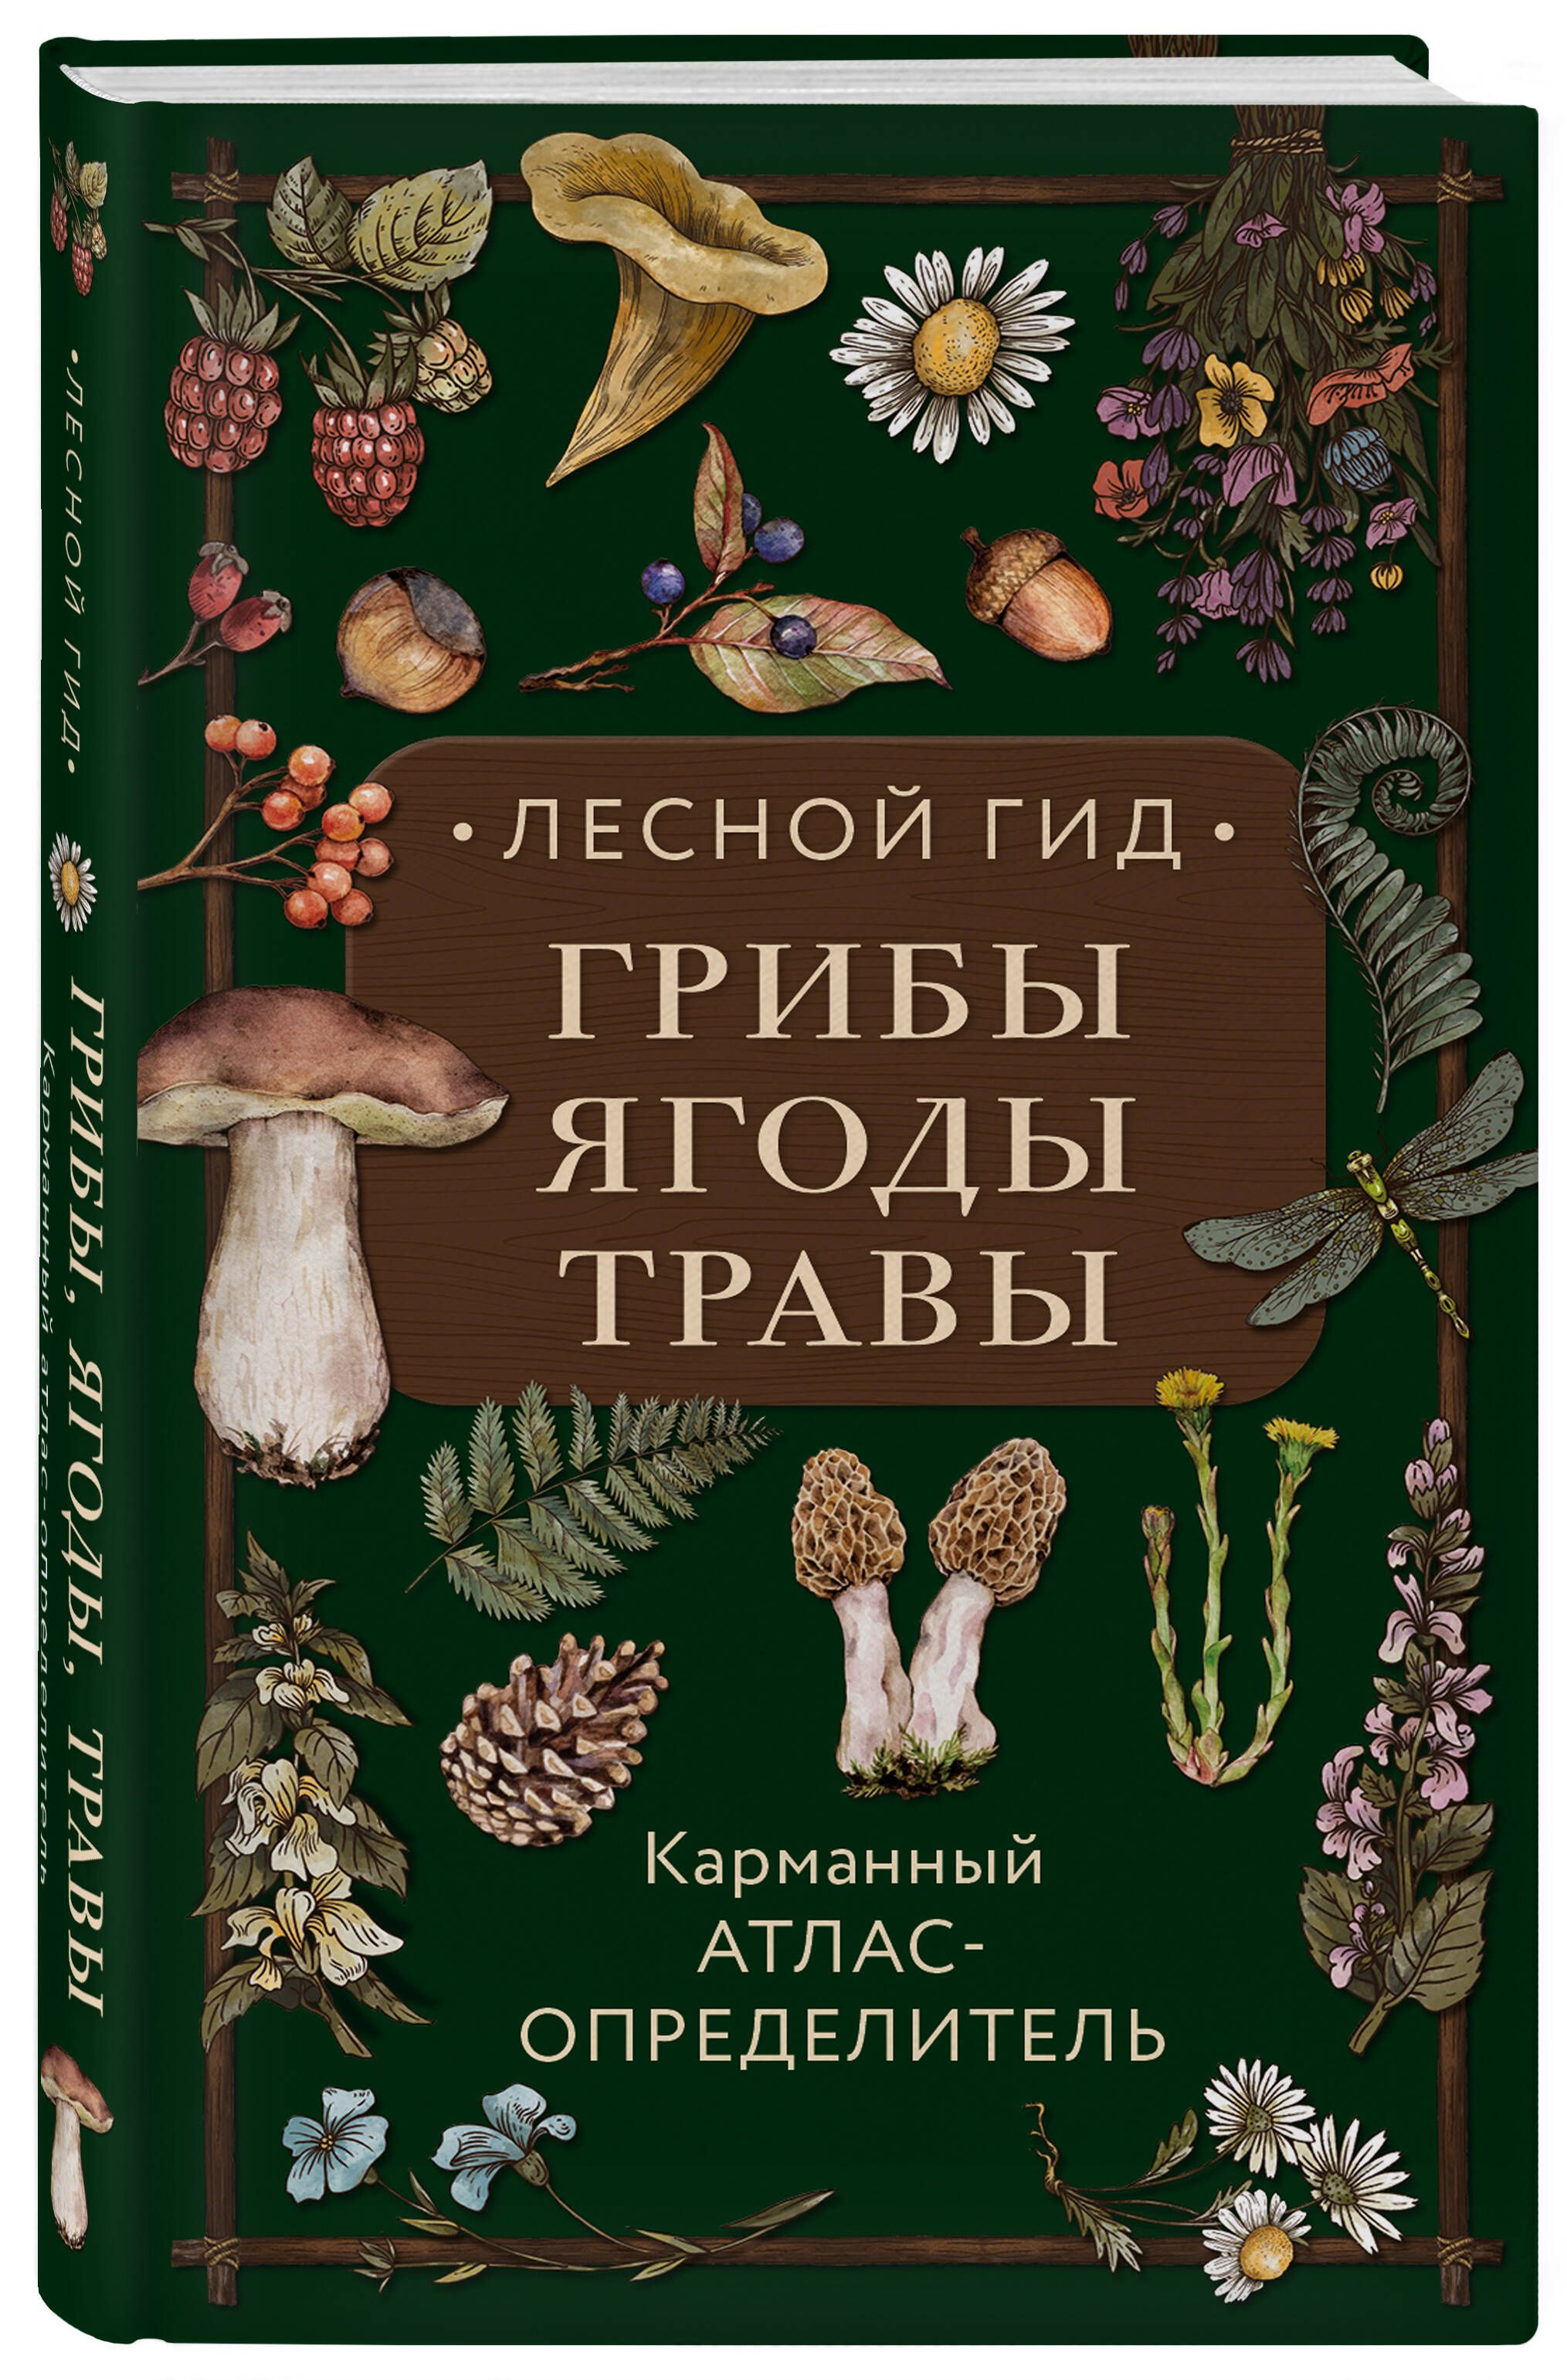 Леснойгид:грибы,ягоды,травы.Карманныйатлас-определитель|СеменоваЛюдмилаСеменовна